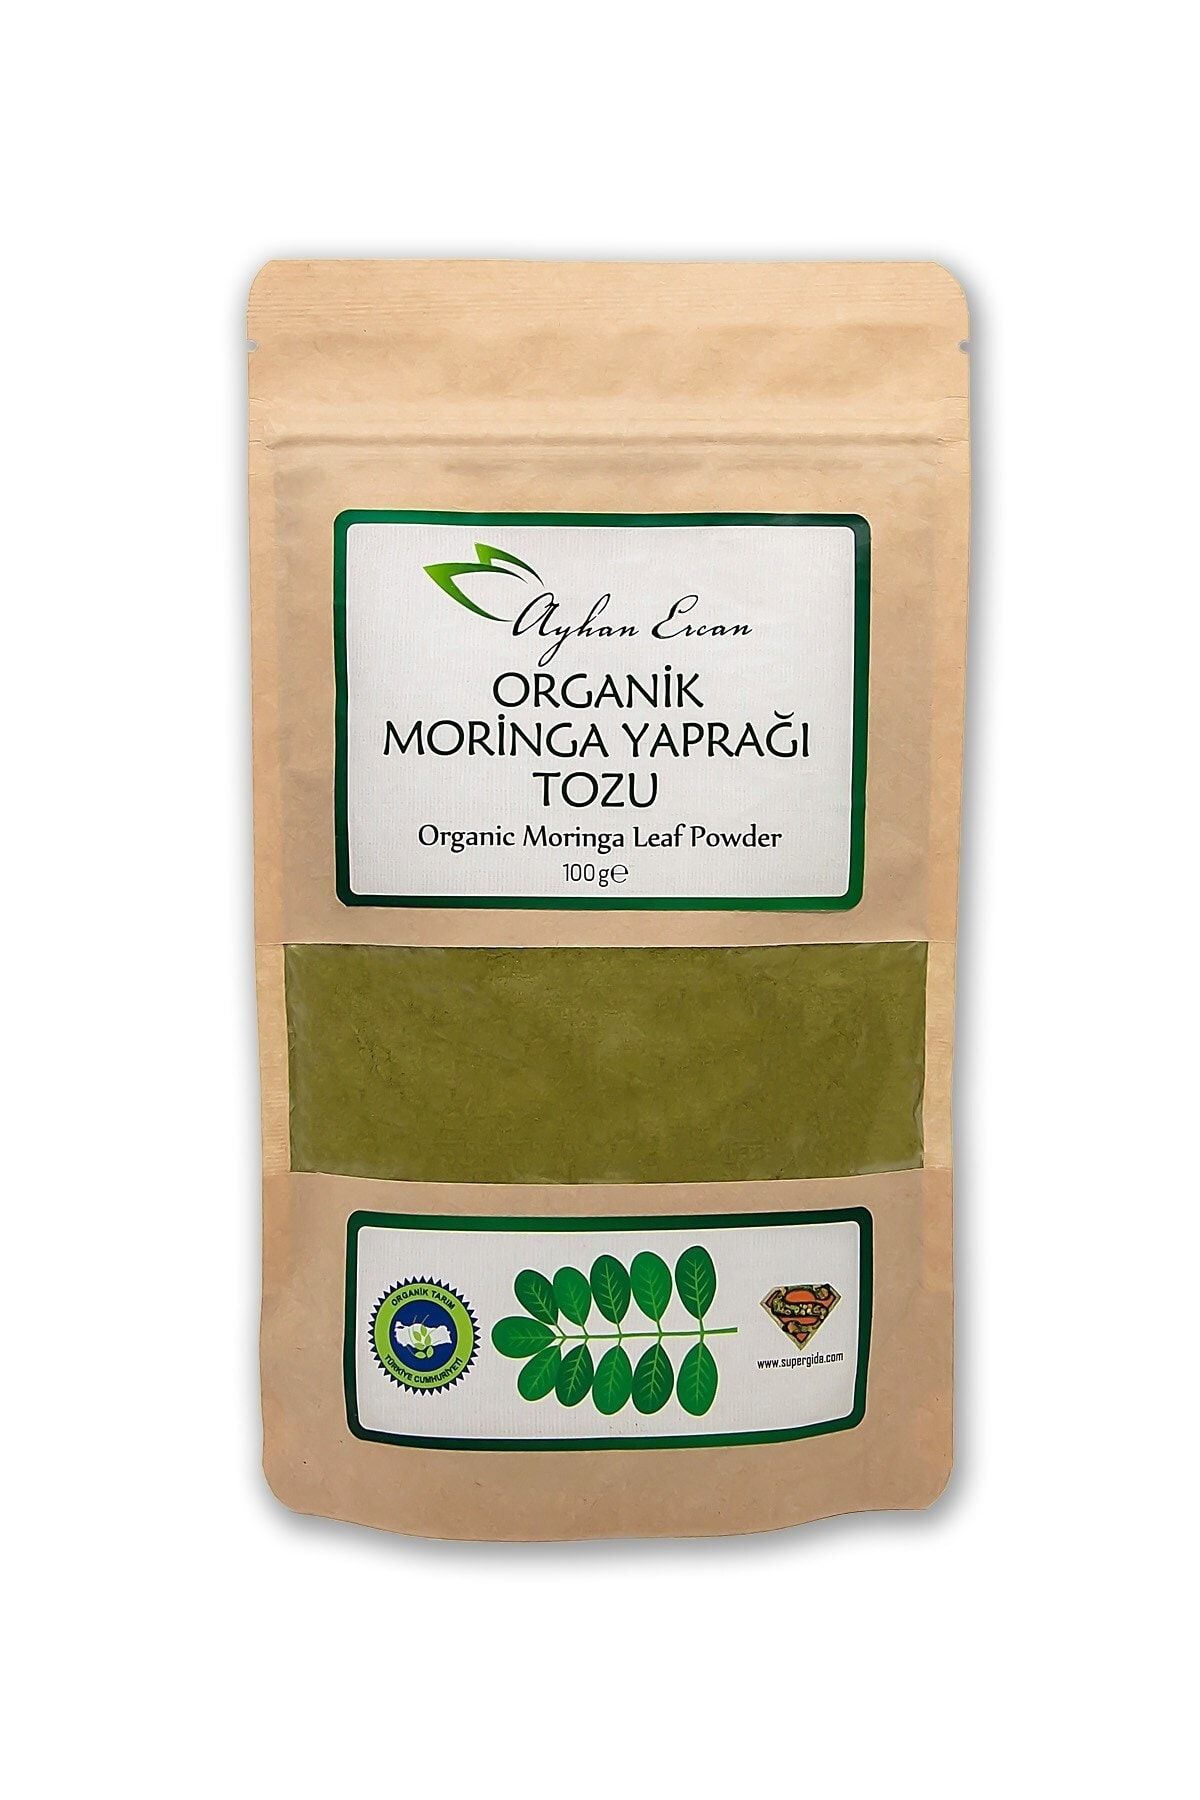 Ayhan Ercan Organik Moringa Yaprağı Tozu 100 G